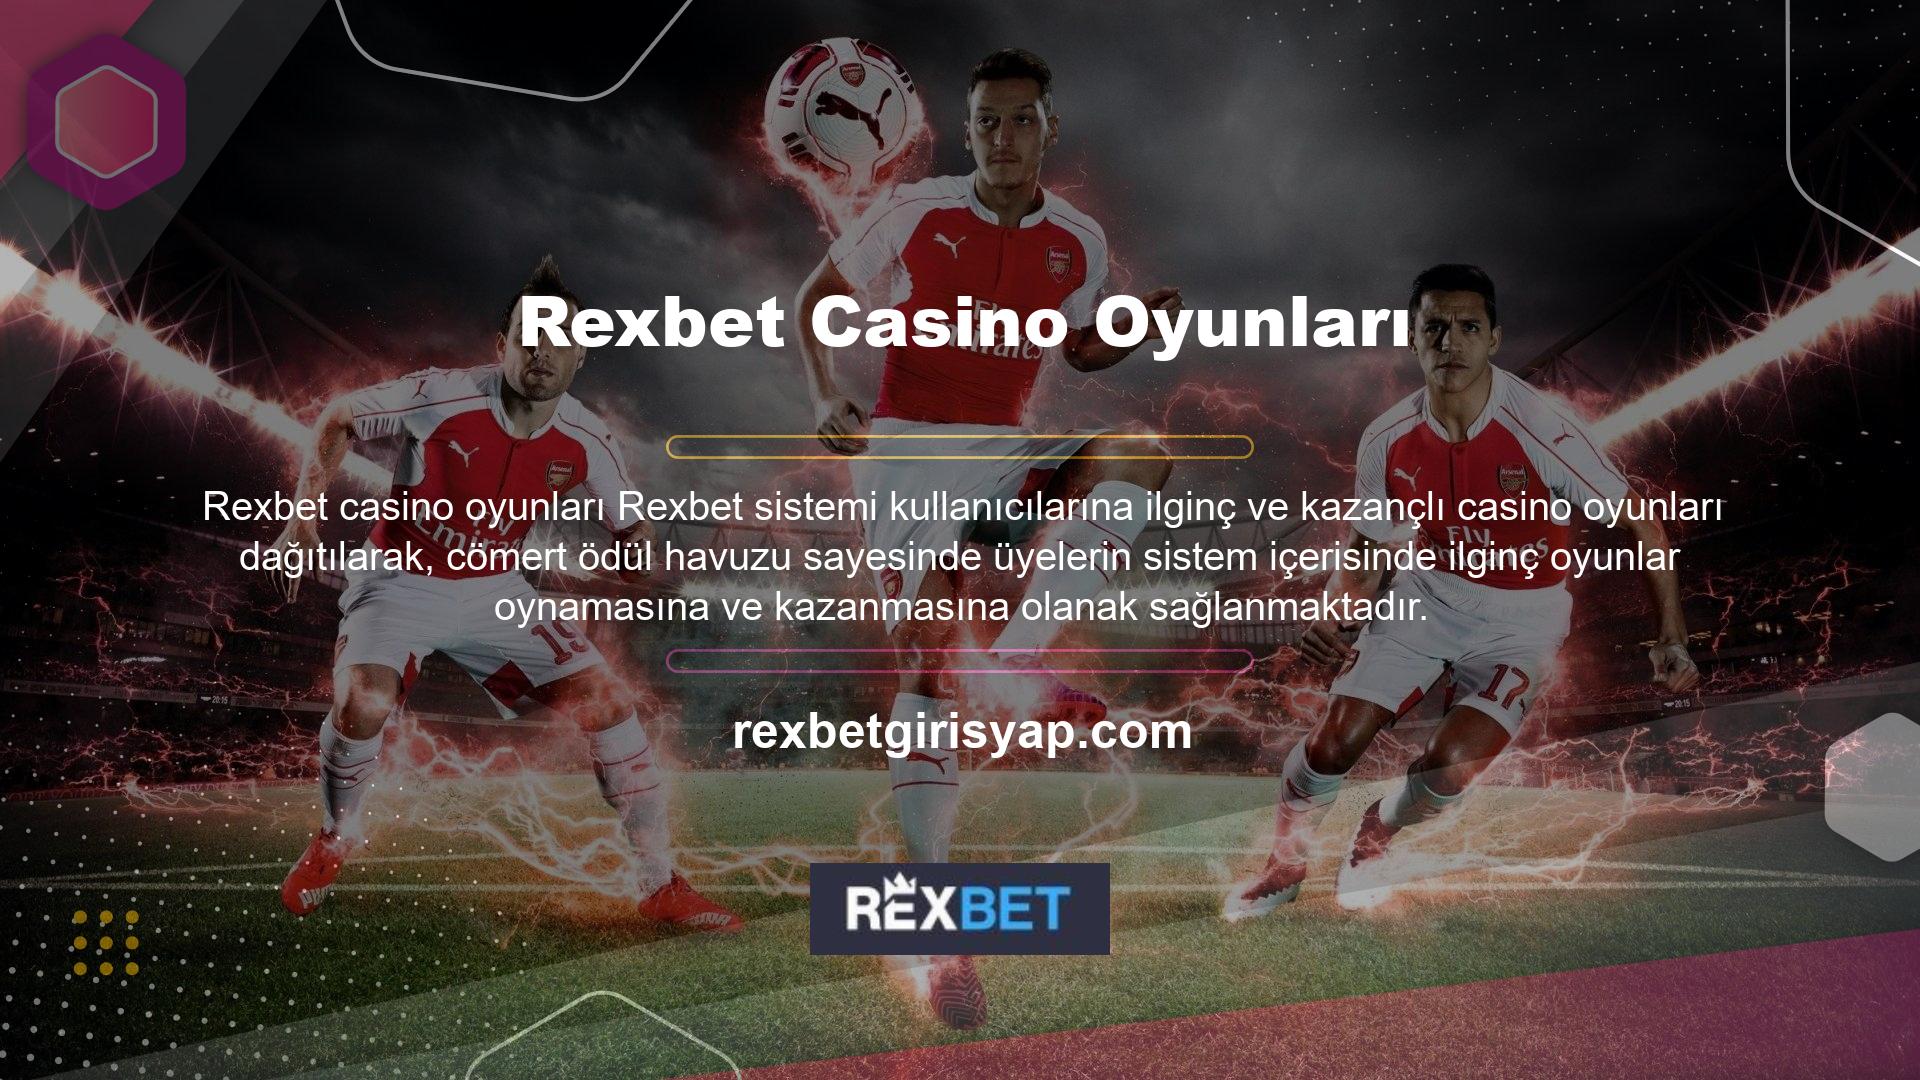 Üyeler Rexbet Casino platformunda slot, poker, rulet, blackjack, bingo, Türk pokeri ve daha birçok oyunu oynayabilirler